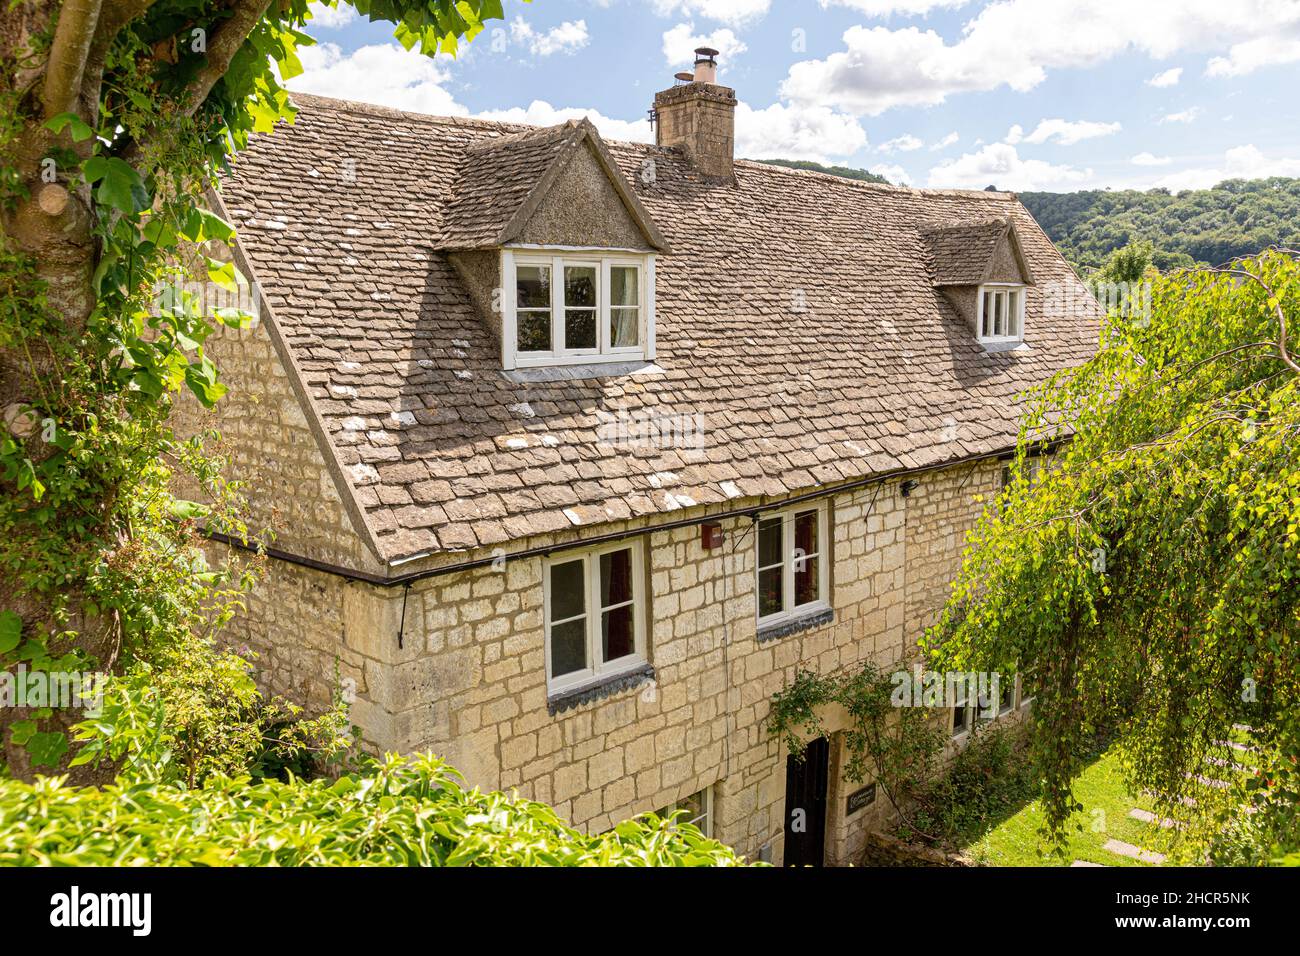 'Recreation Cottage' ist ein traditionelles 18th C Steingebäude mit einem Steingefliesten Dach und Dachfenstern im Cotswold-Dorf Slad, Gloucestershire. Stockfoto